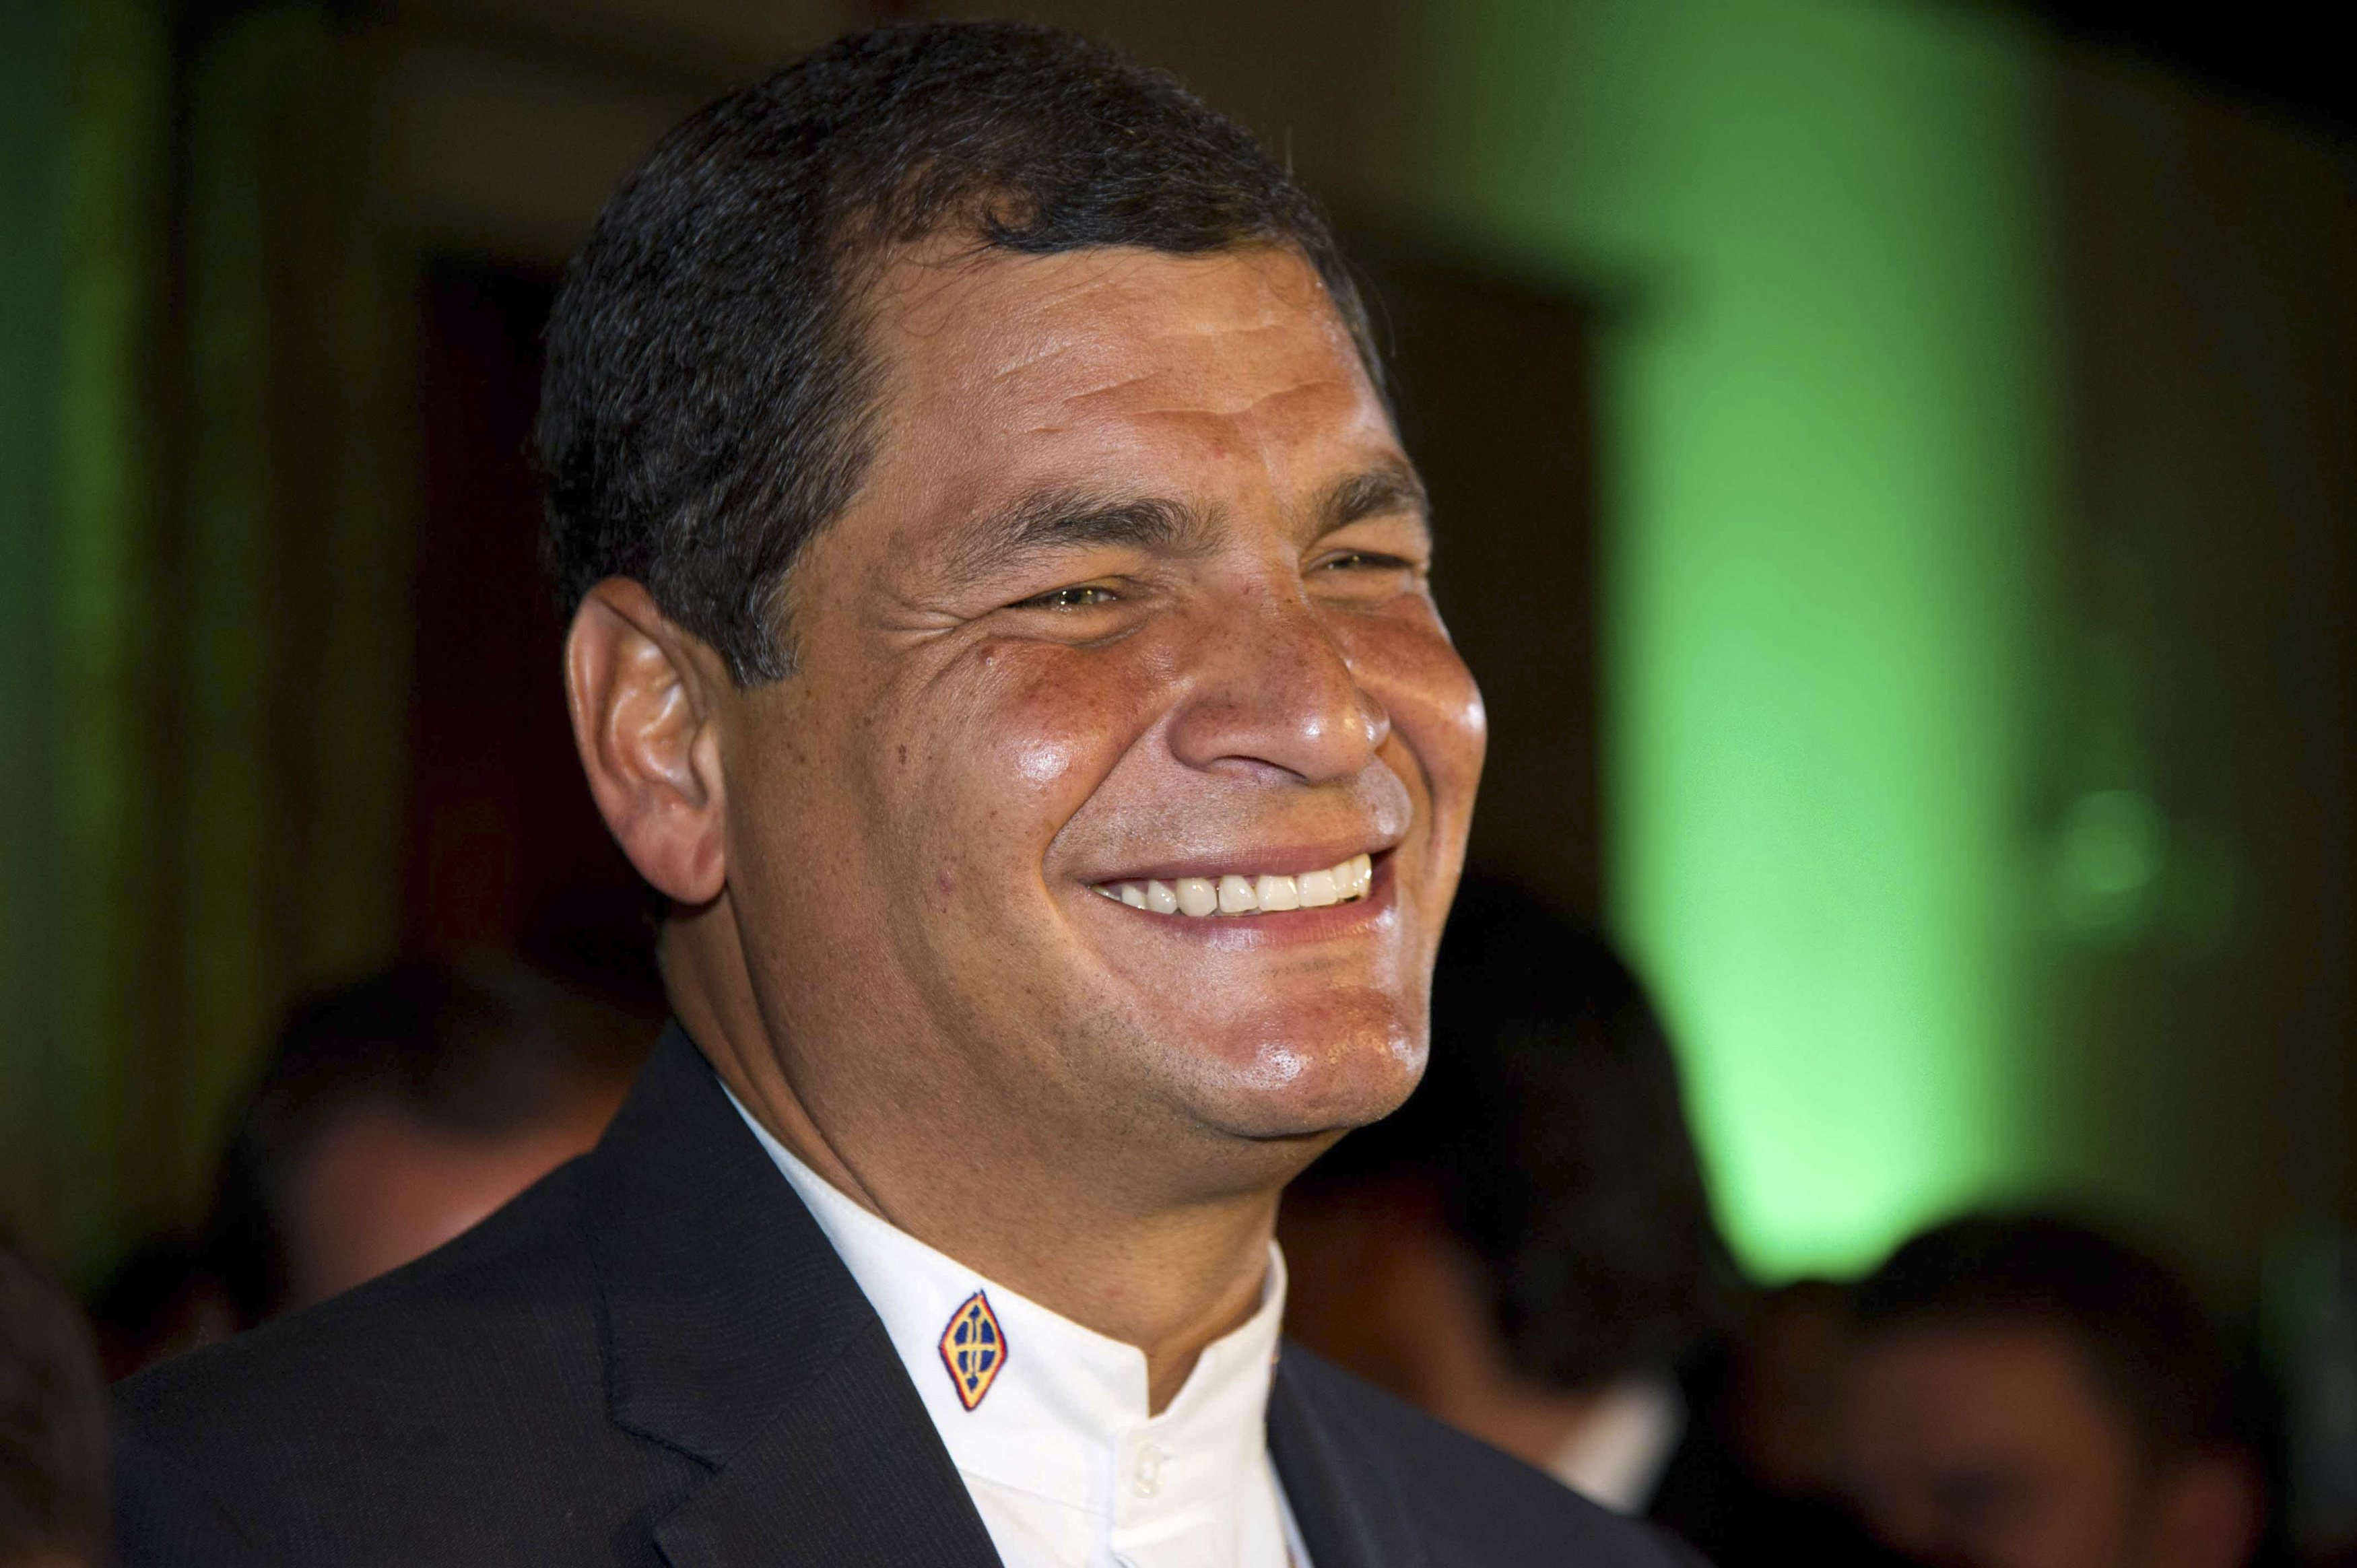 Rafael Correa: Bélgica jamás permitirá una extradición (video)